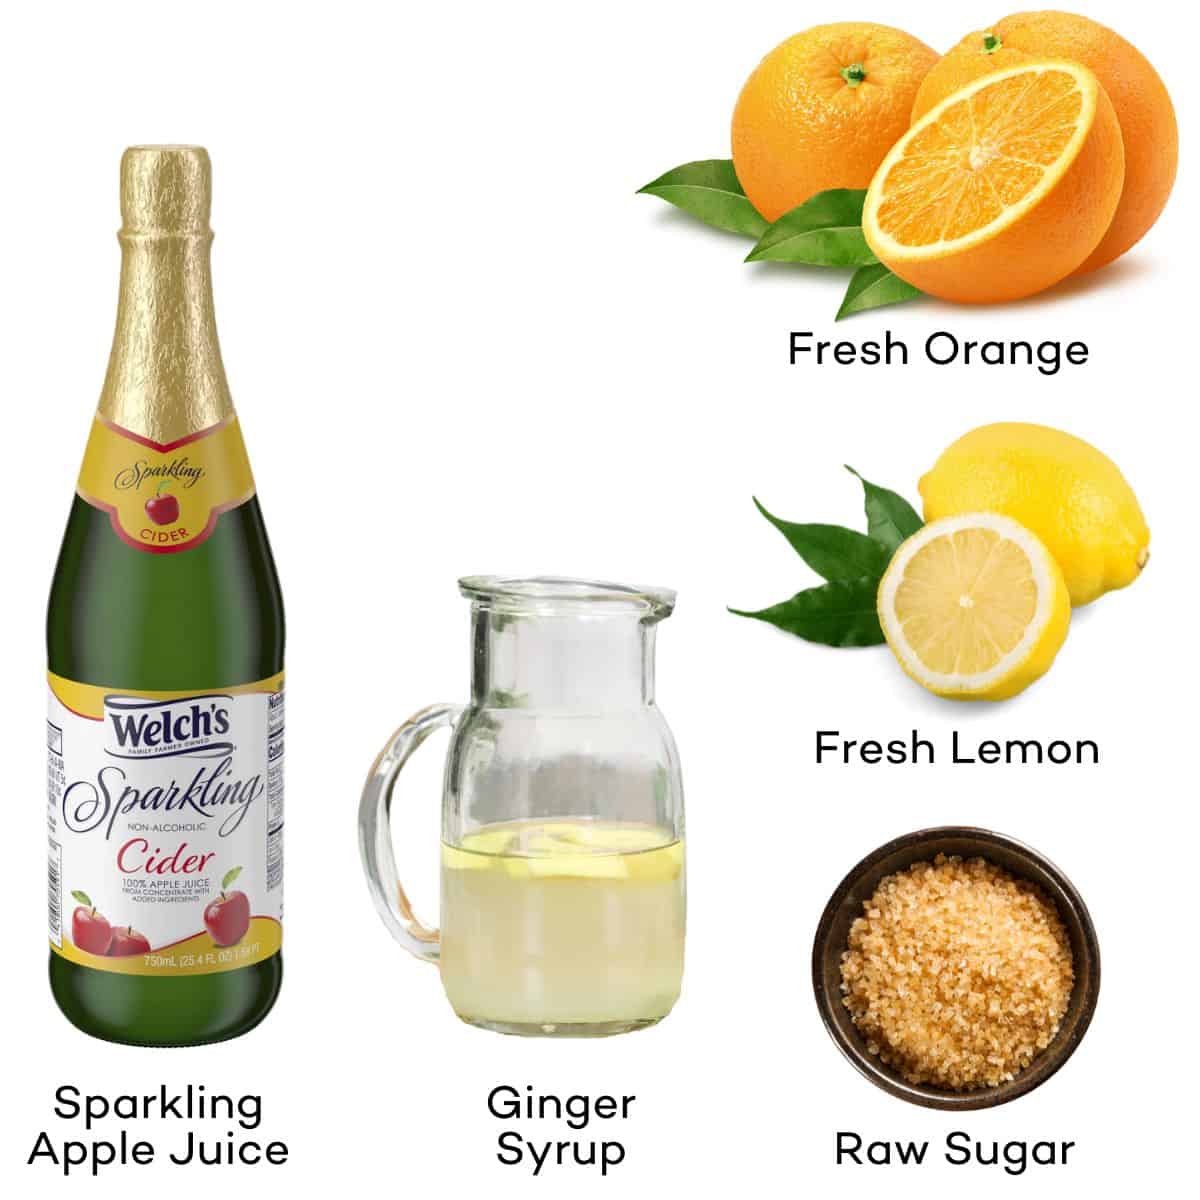 Ingredients for Citrus Apple Mocktails - Sparkling apple cider, lemon, orange, ginger syrup, raw sugar.